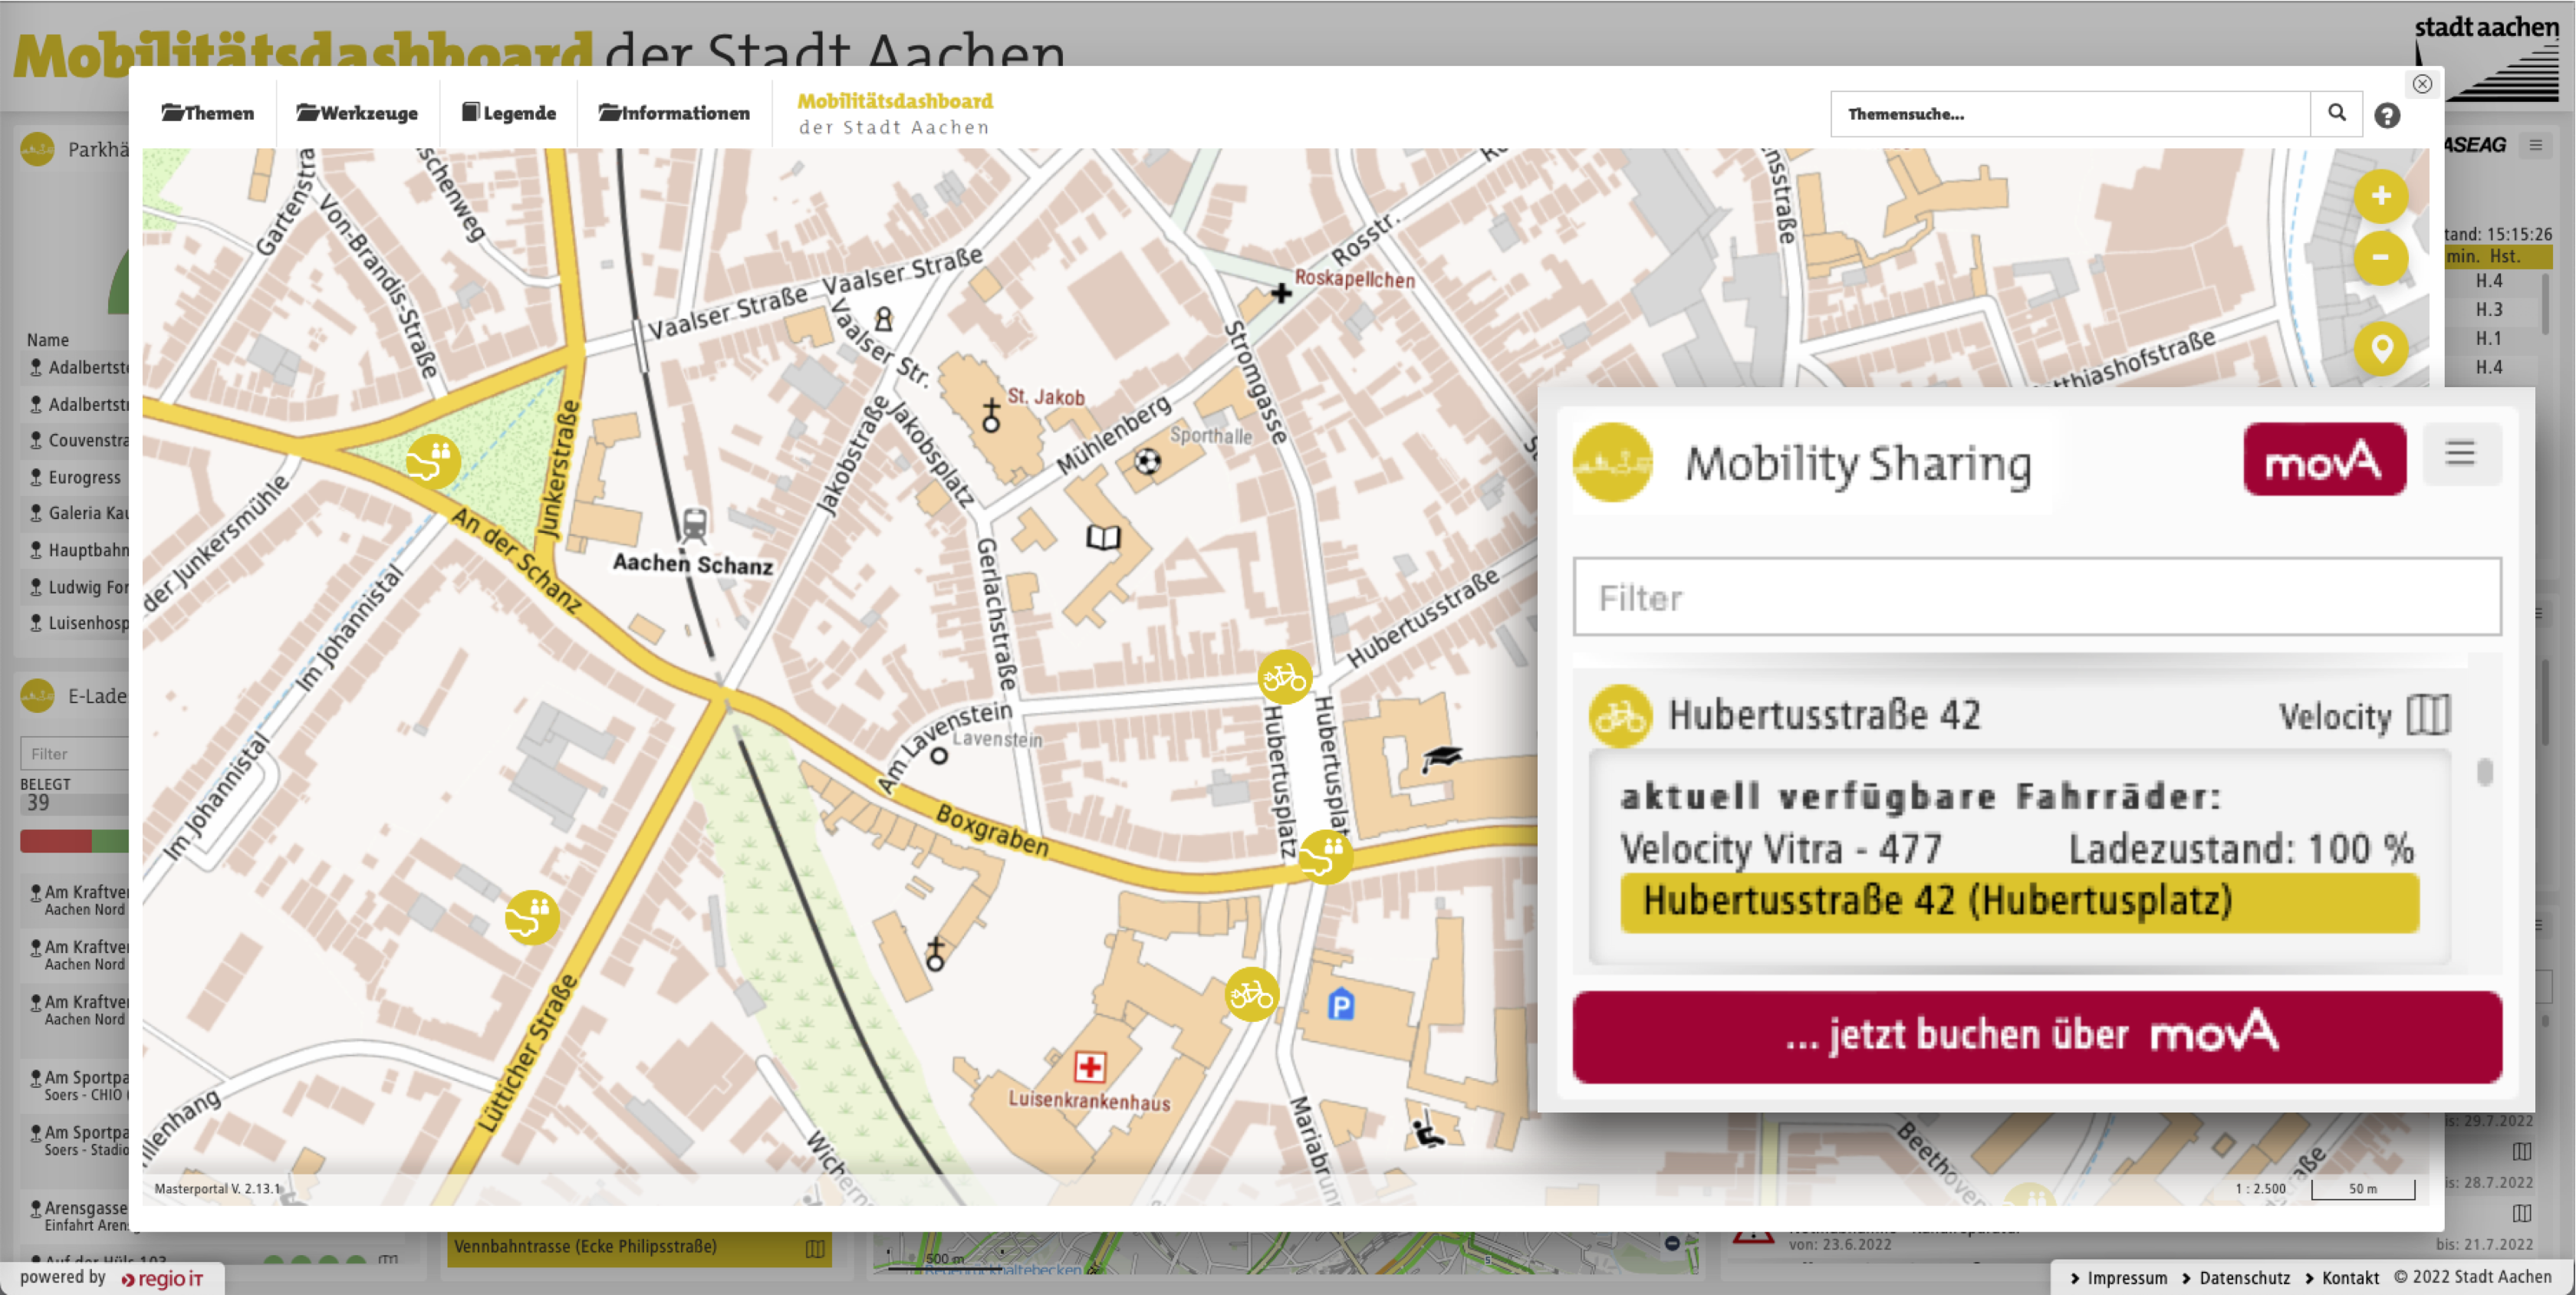 Stadtplan mit verzeichneten Bike-Sharing-Stationen sowie Detail-Widget mit Informationen zur Verfügbarkeit von Leih-Fahrrädern